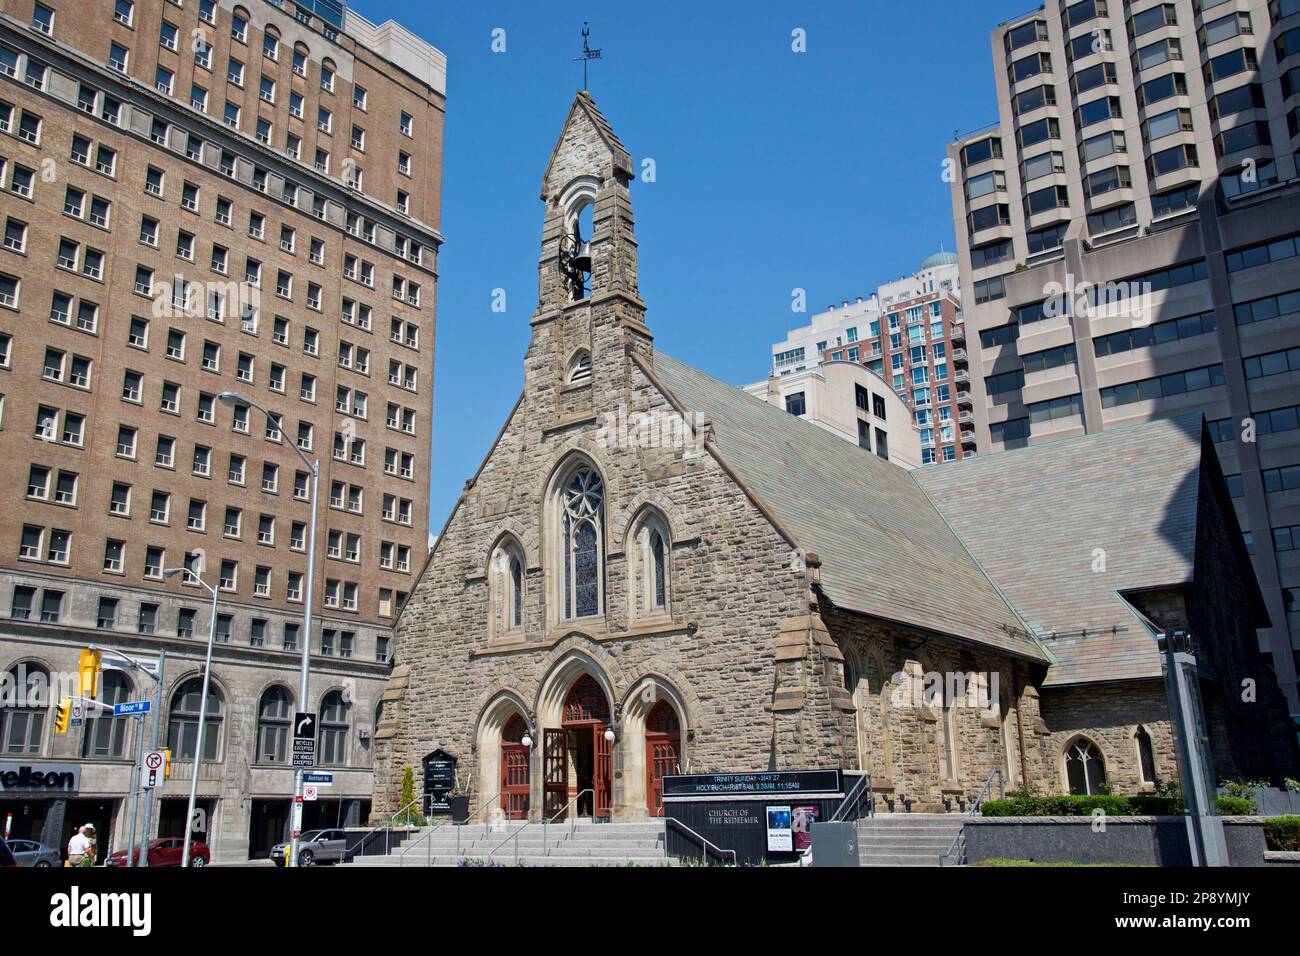 Église historique dans le quartier du centre-ville de Toronto, Canada Banque D'Images